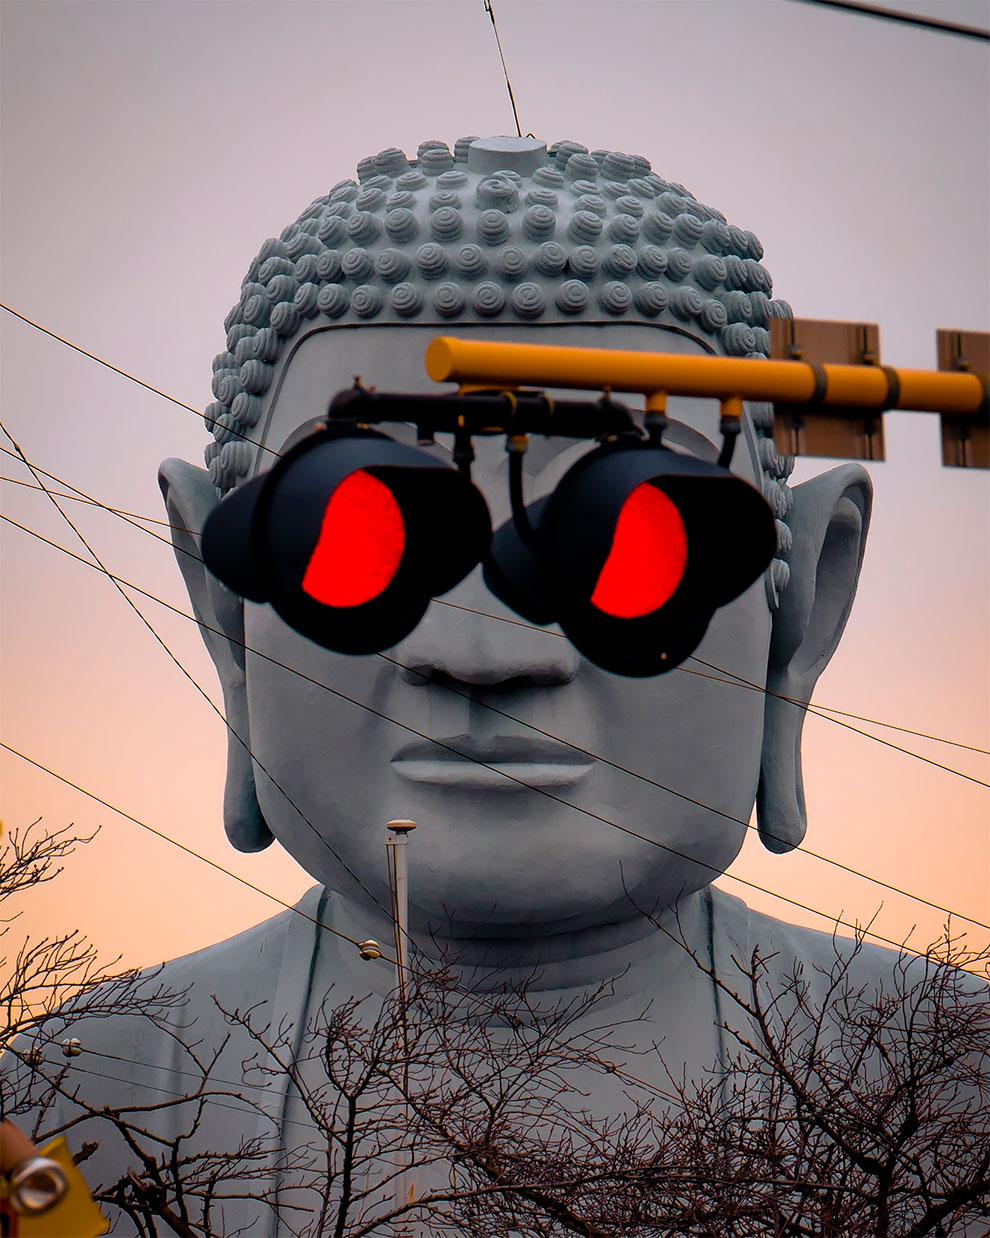 El Gran Buda en Japón está cada vez más canchero (3)